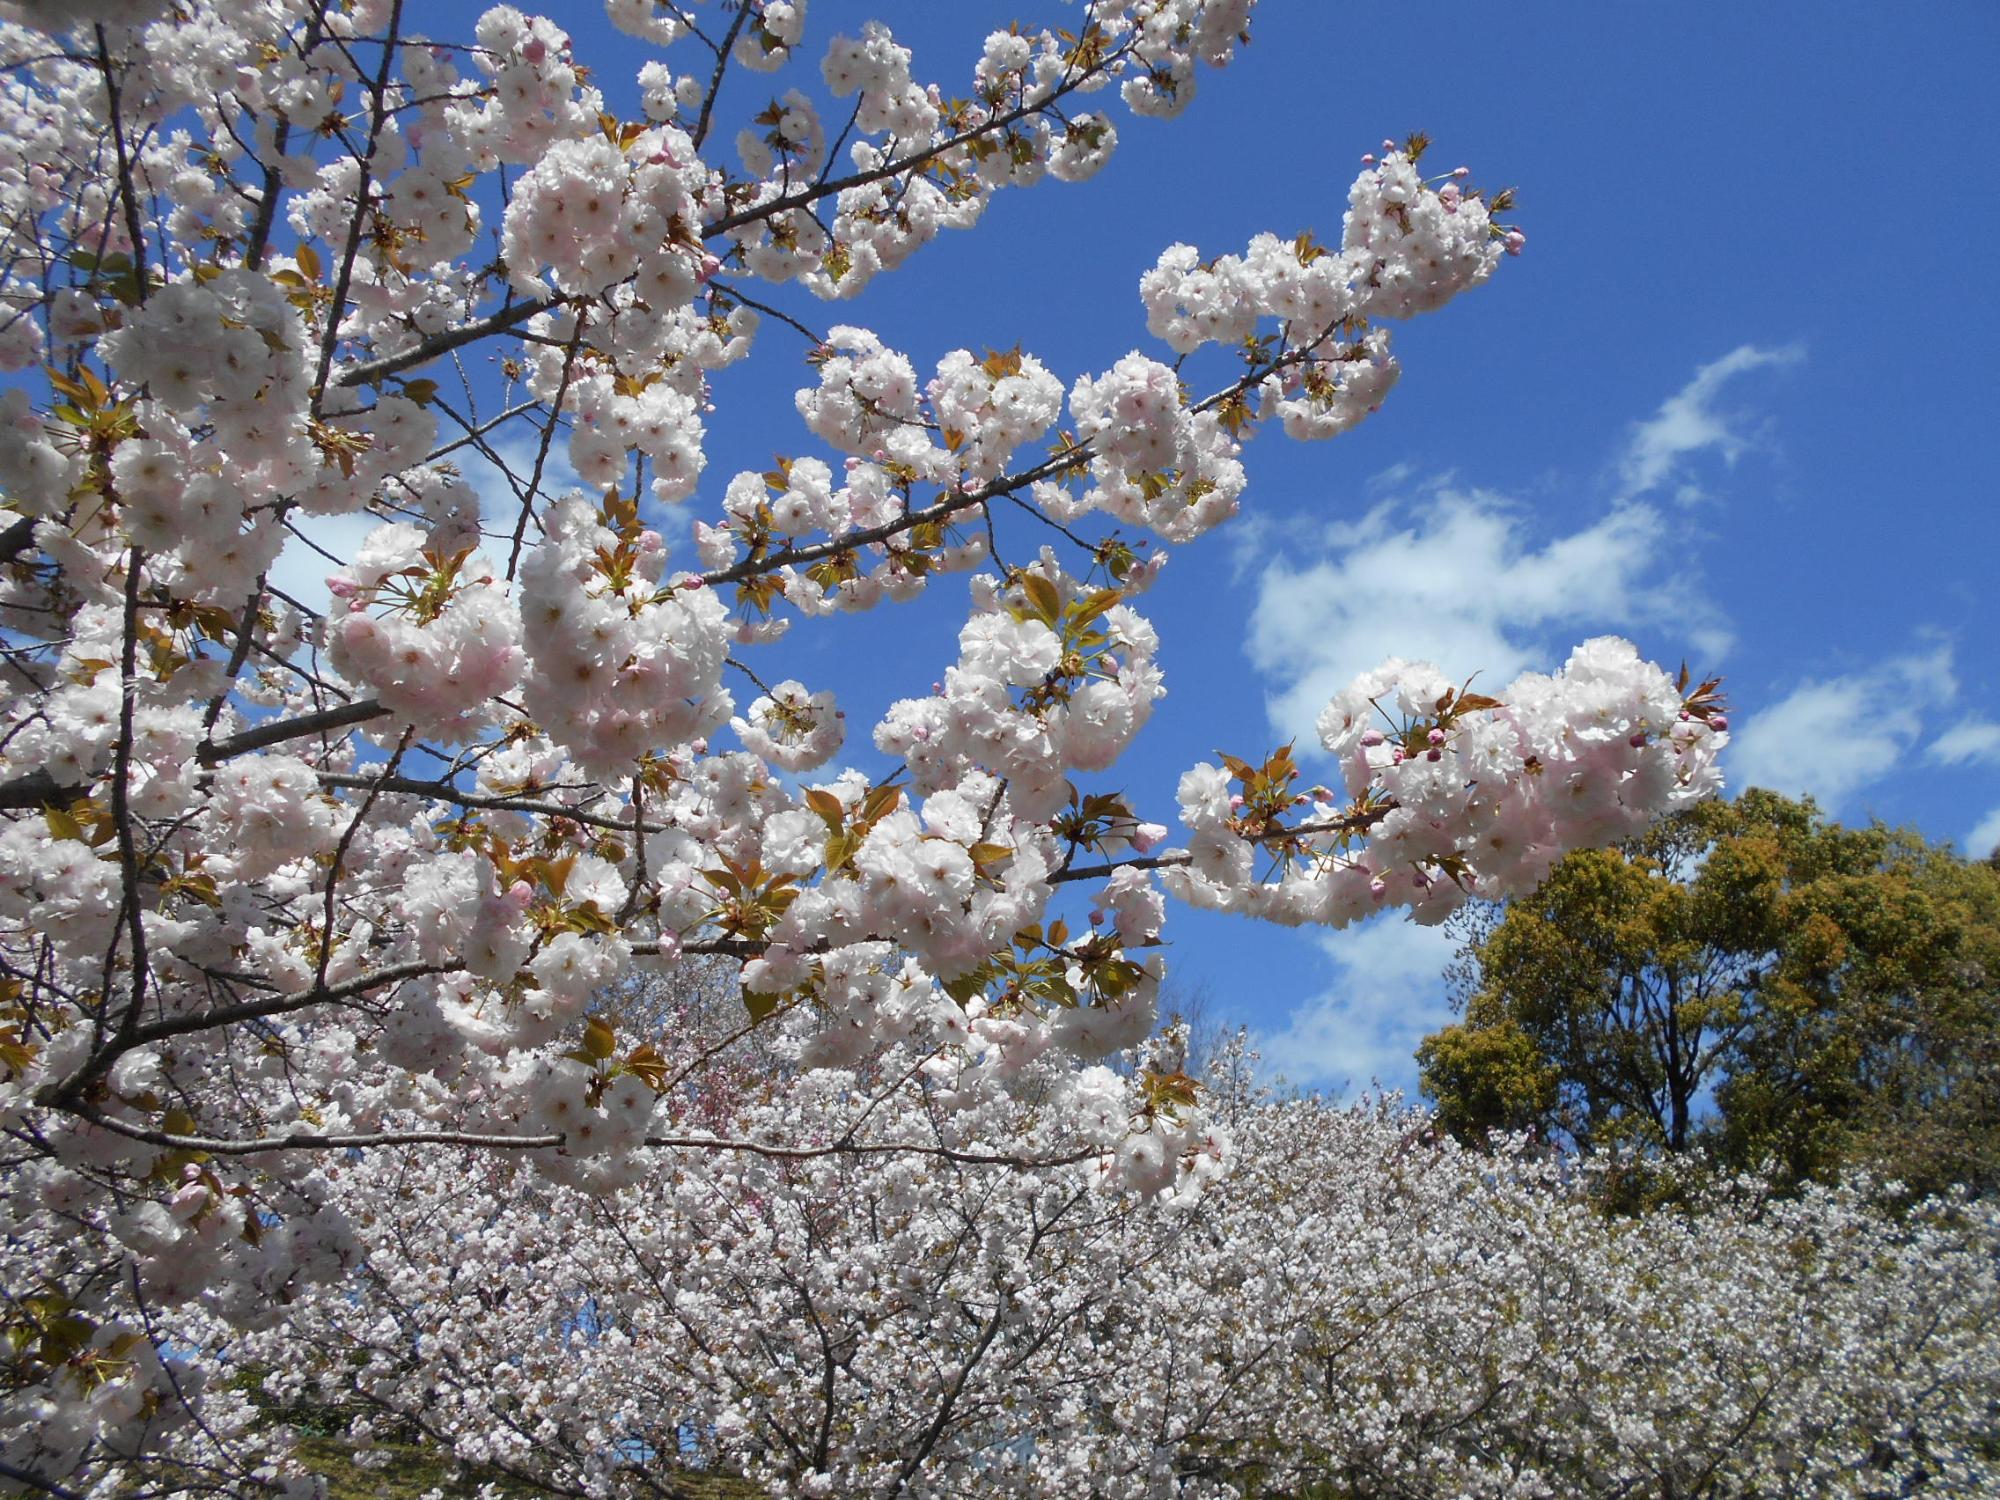 桜見の丘の八重桜が満開となっています。一部つぼみの状態の木がありますが、全体として見ても見ごたえがあります。